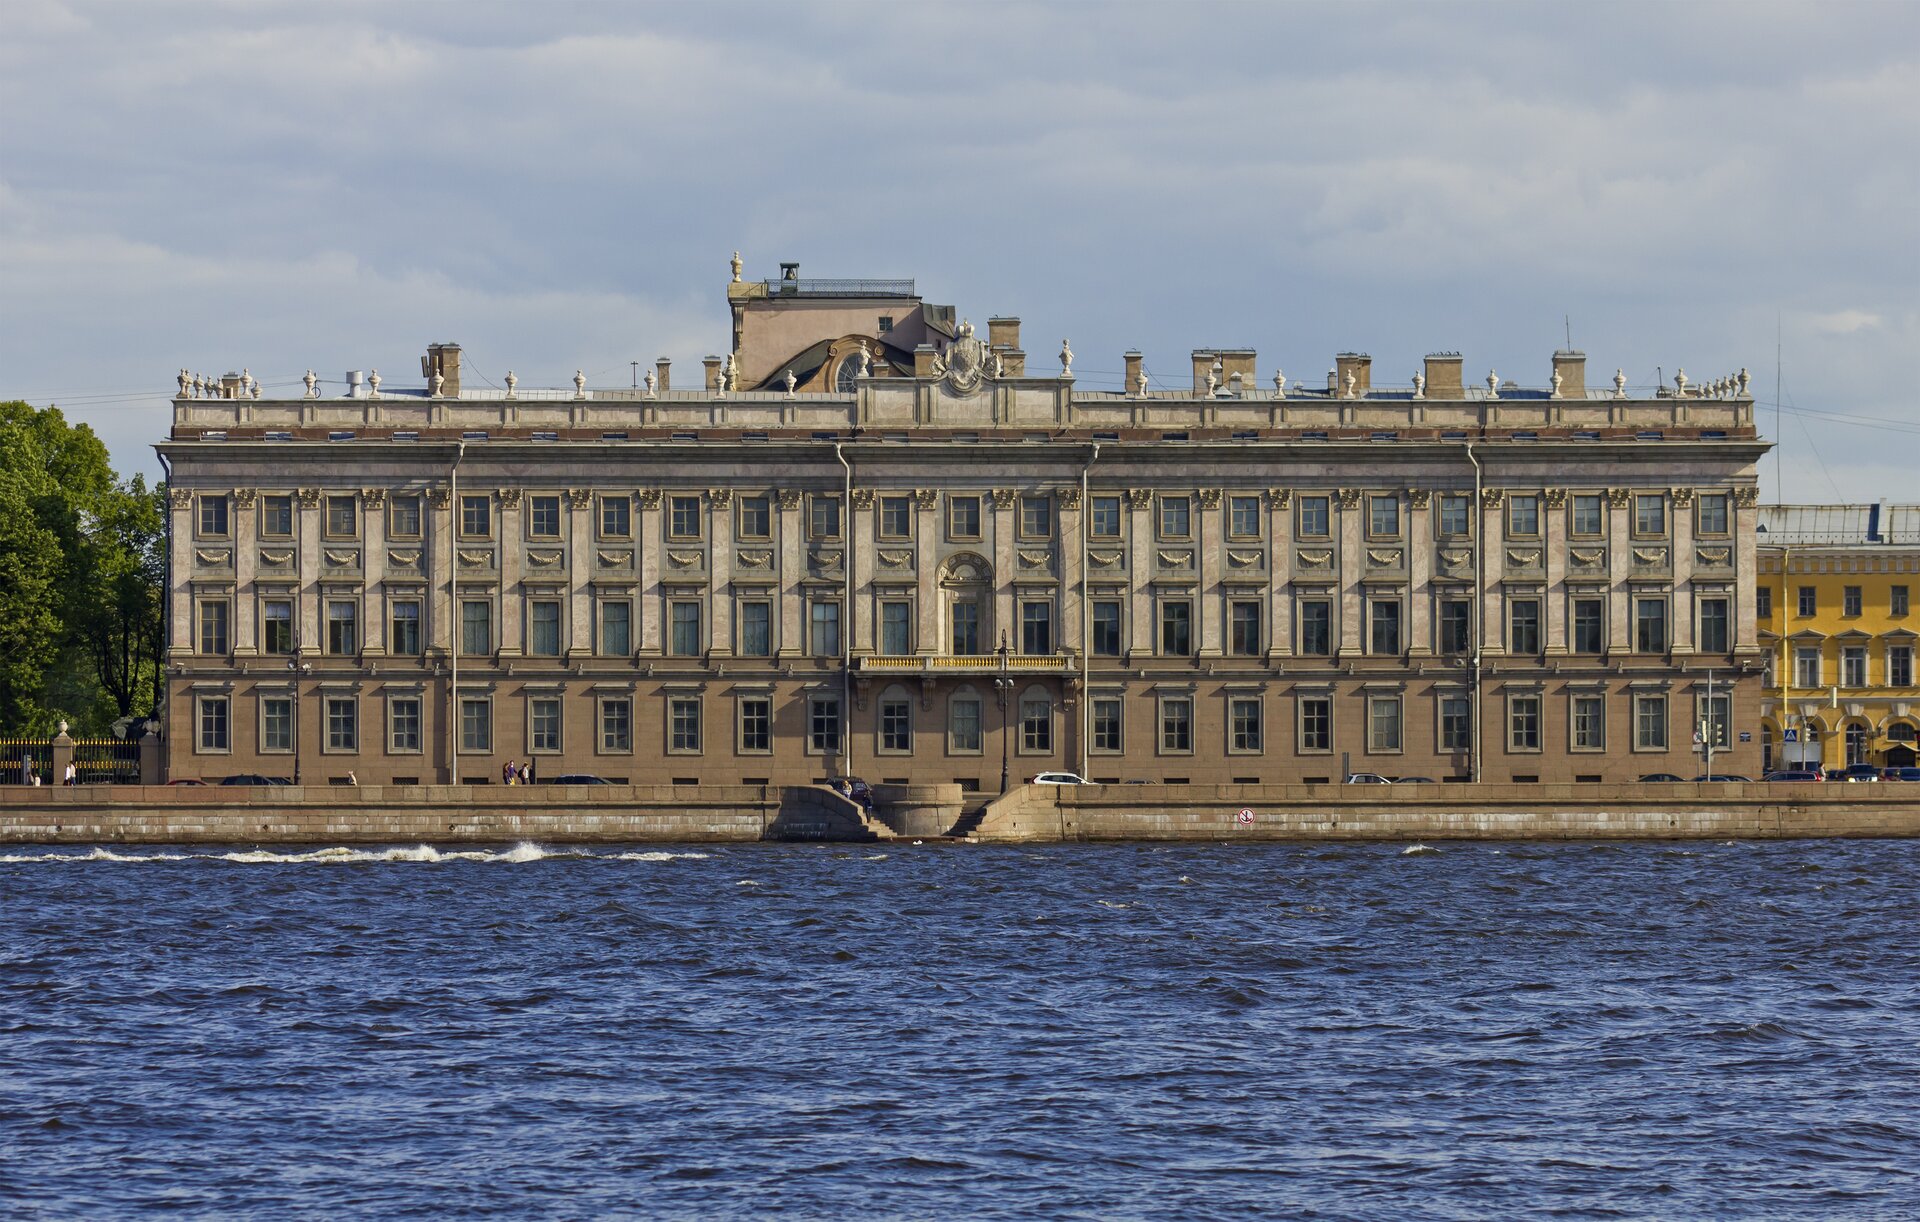 Nabrzeże Pałacowe w Petersburgu Źródło: A. Savin, Nabrzeże Pałacowe w Petersburgu, 2012, fotografia, licencja: CC BY-SA 3.0.